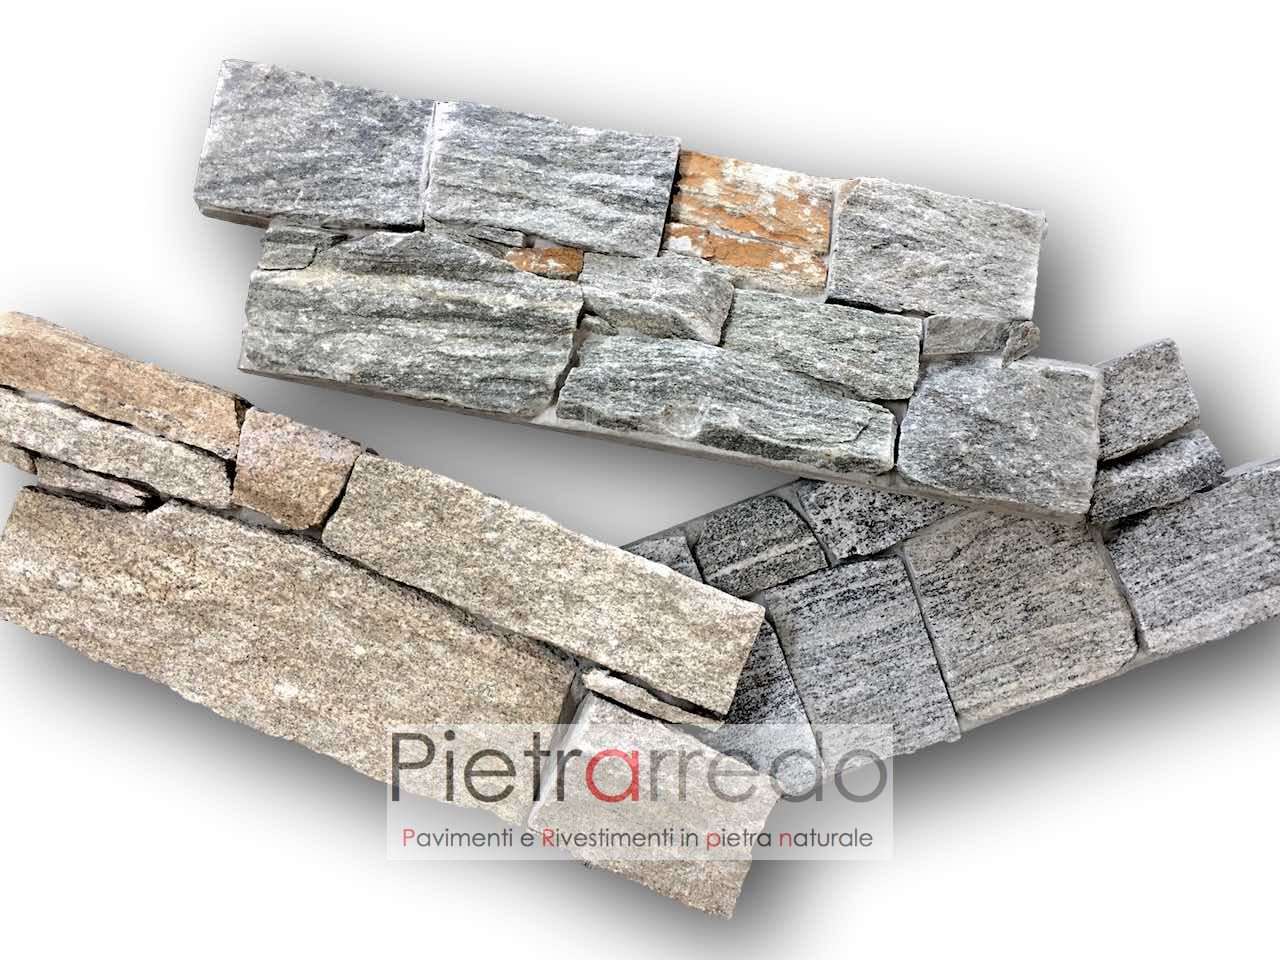 rivestimenti-pietra-rustici-prezzi-costo-muro-secco-semisecco-parete-pietrarredo-milano-beola-luserna-granito